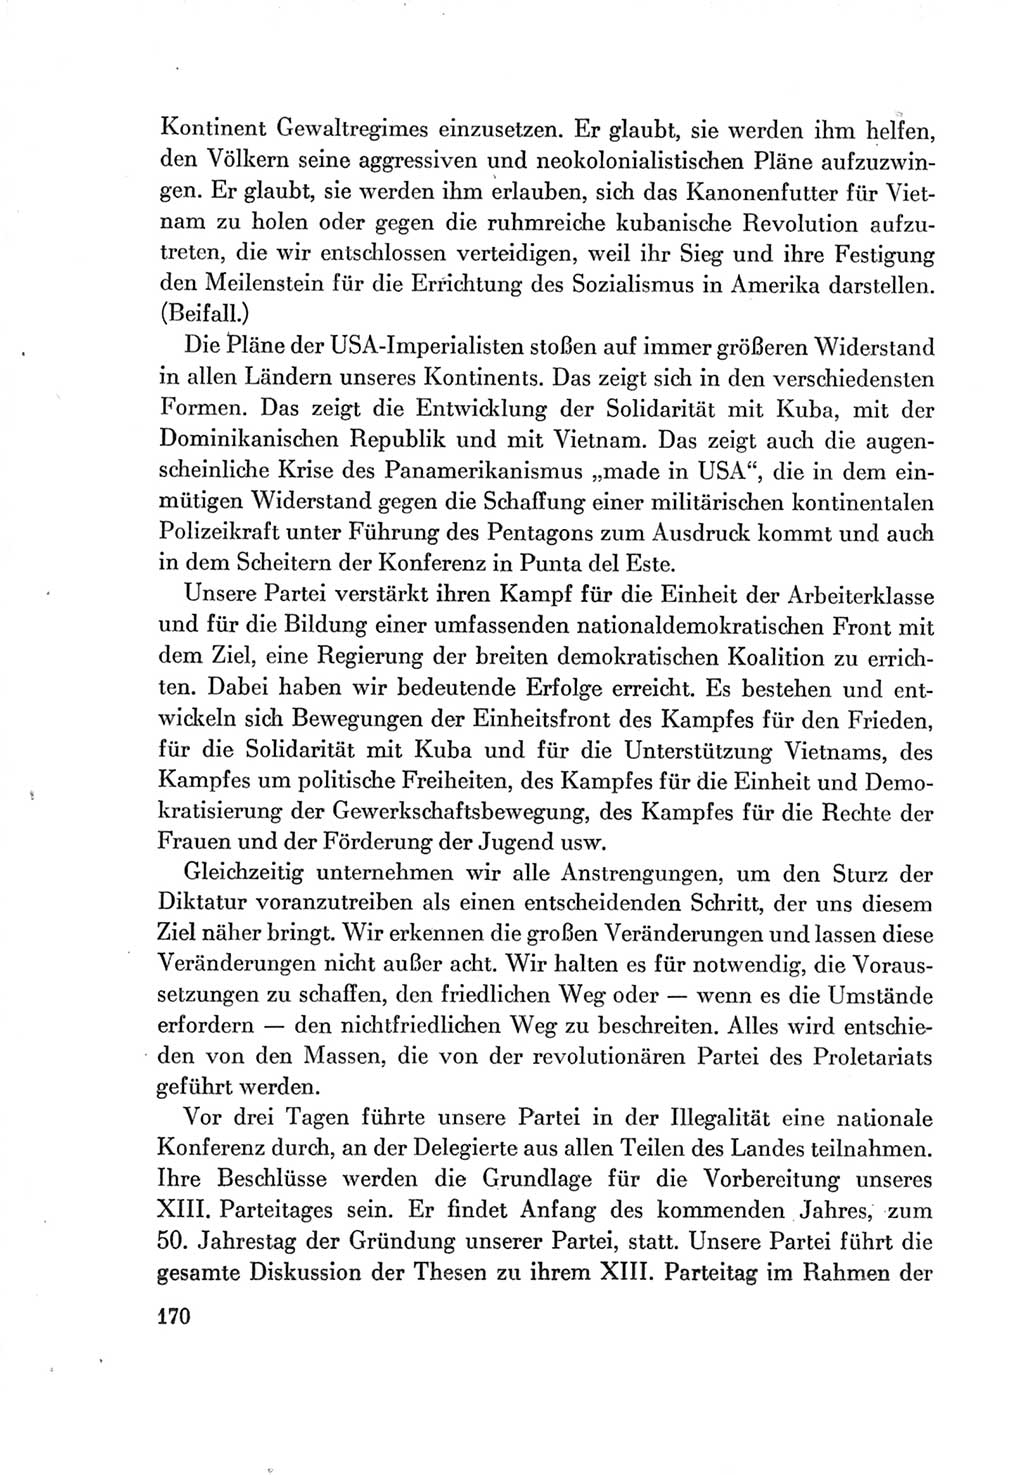 Protokoll der Verhandlungen des Ⅶ. Parteitages der Sozialistischen Einheitspartei Deutschlands (SED) [Deutsche Demokratische Republik (DDR)] 1967, Band Ⅱ, Seite 170 (Prot. Verh. Ⅶ. PT SED DDR 1967, Bd. Ⅱ, S. 170)